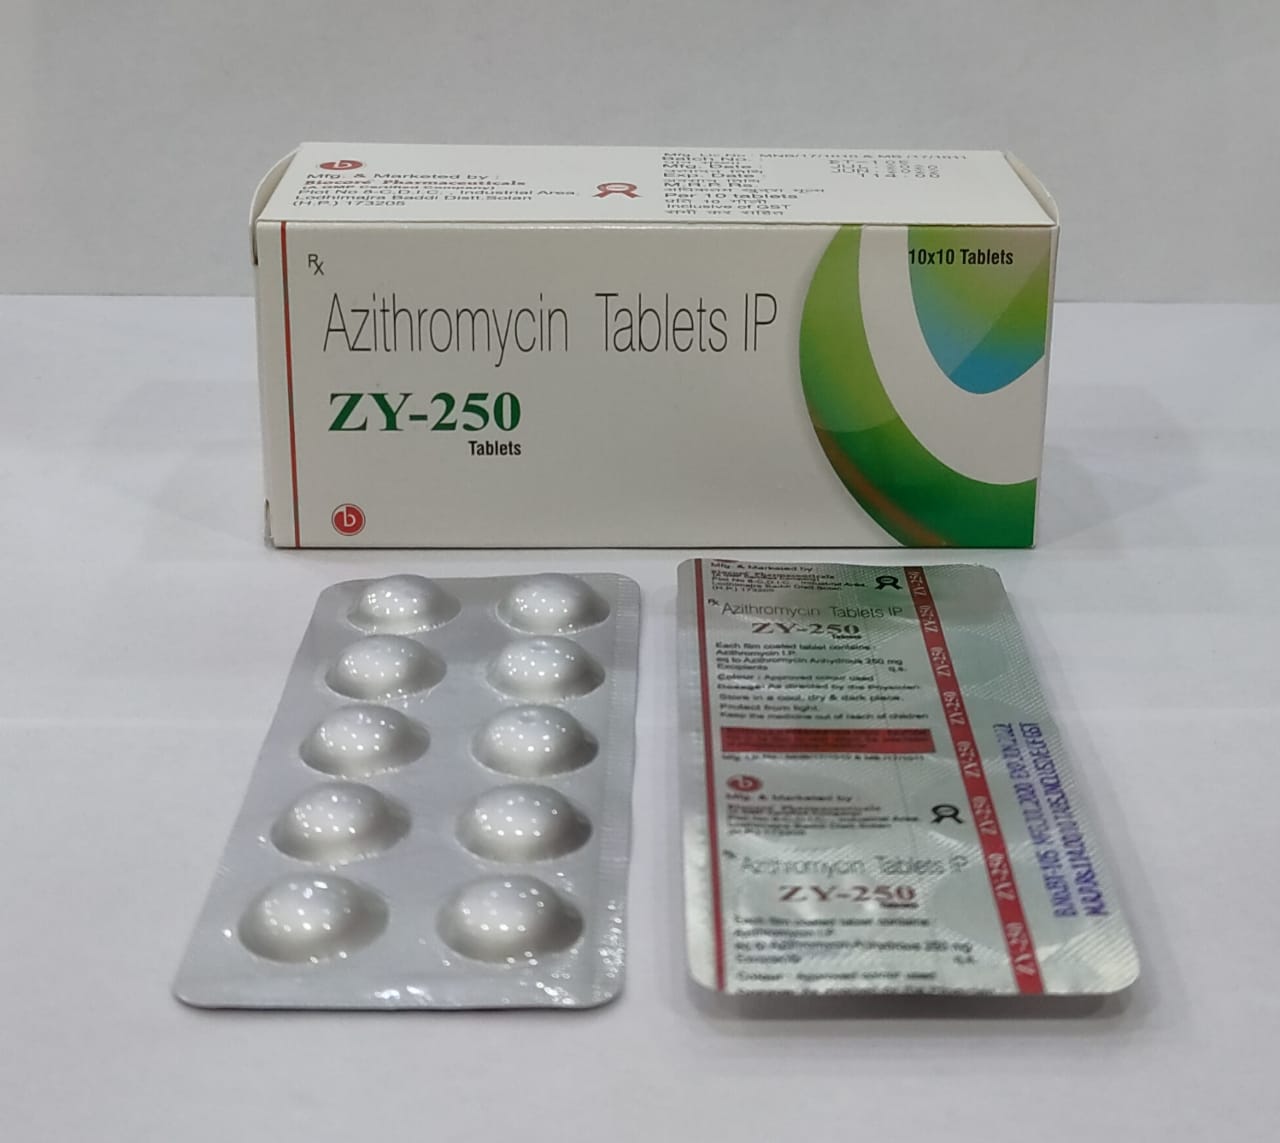 ZY 250 Tablets